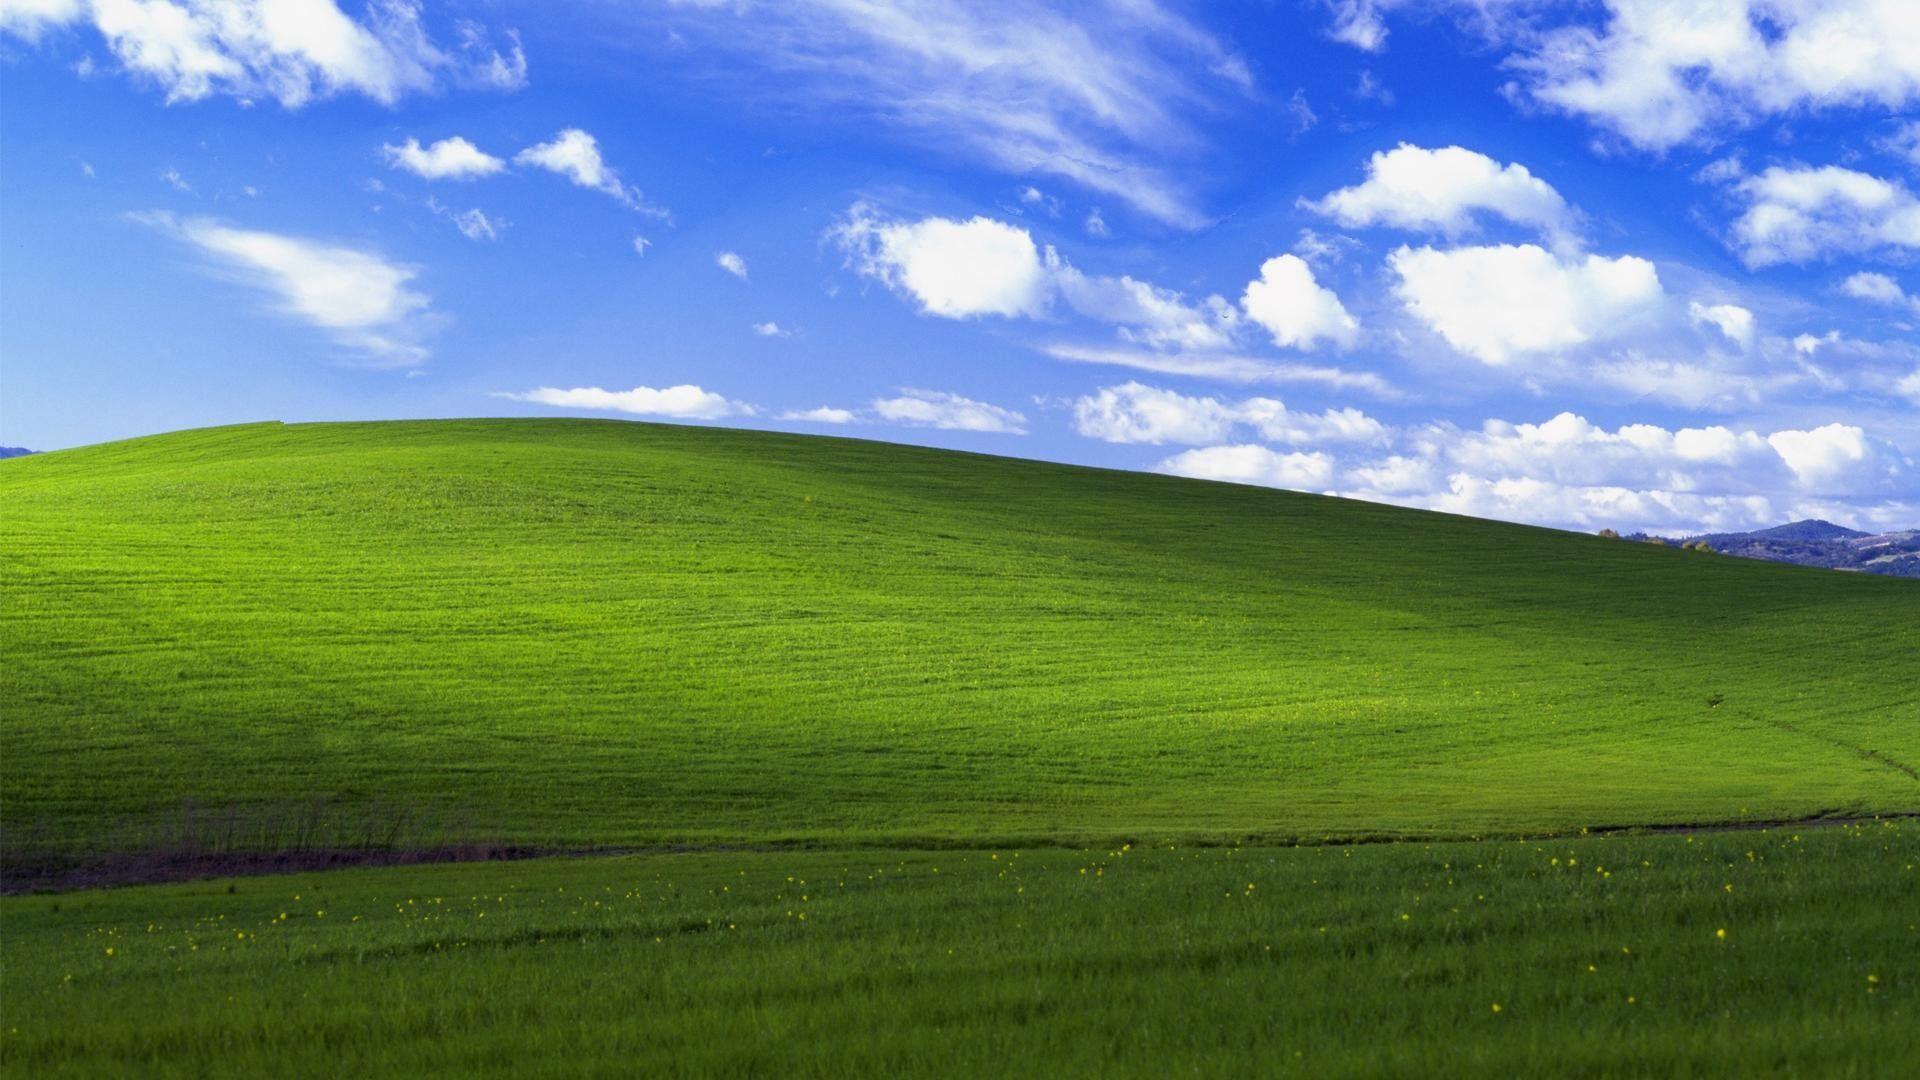 Làm thế nào để một bức ảnh đơn giản như Bliss lại trở thành biểu tượng của hệ điều hành Windows XP? Khám phá câu trả lời khi xem hình nền Windows XP Bliss. Với khung cảnh đồng cỏ xanh và bầu trời xanh tươi, Bliss sẽ mang lại cho bạn cảm giác thoải mái và yên bình.